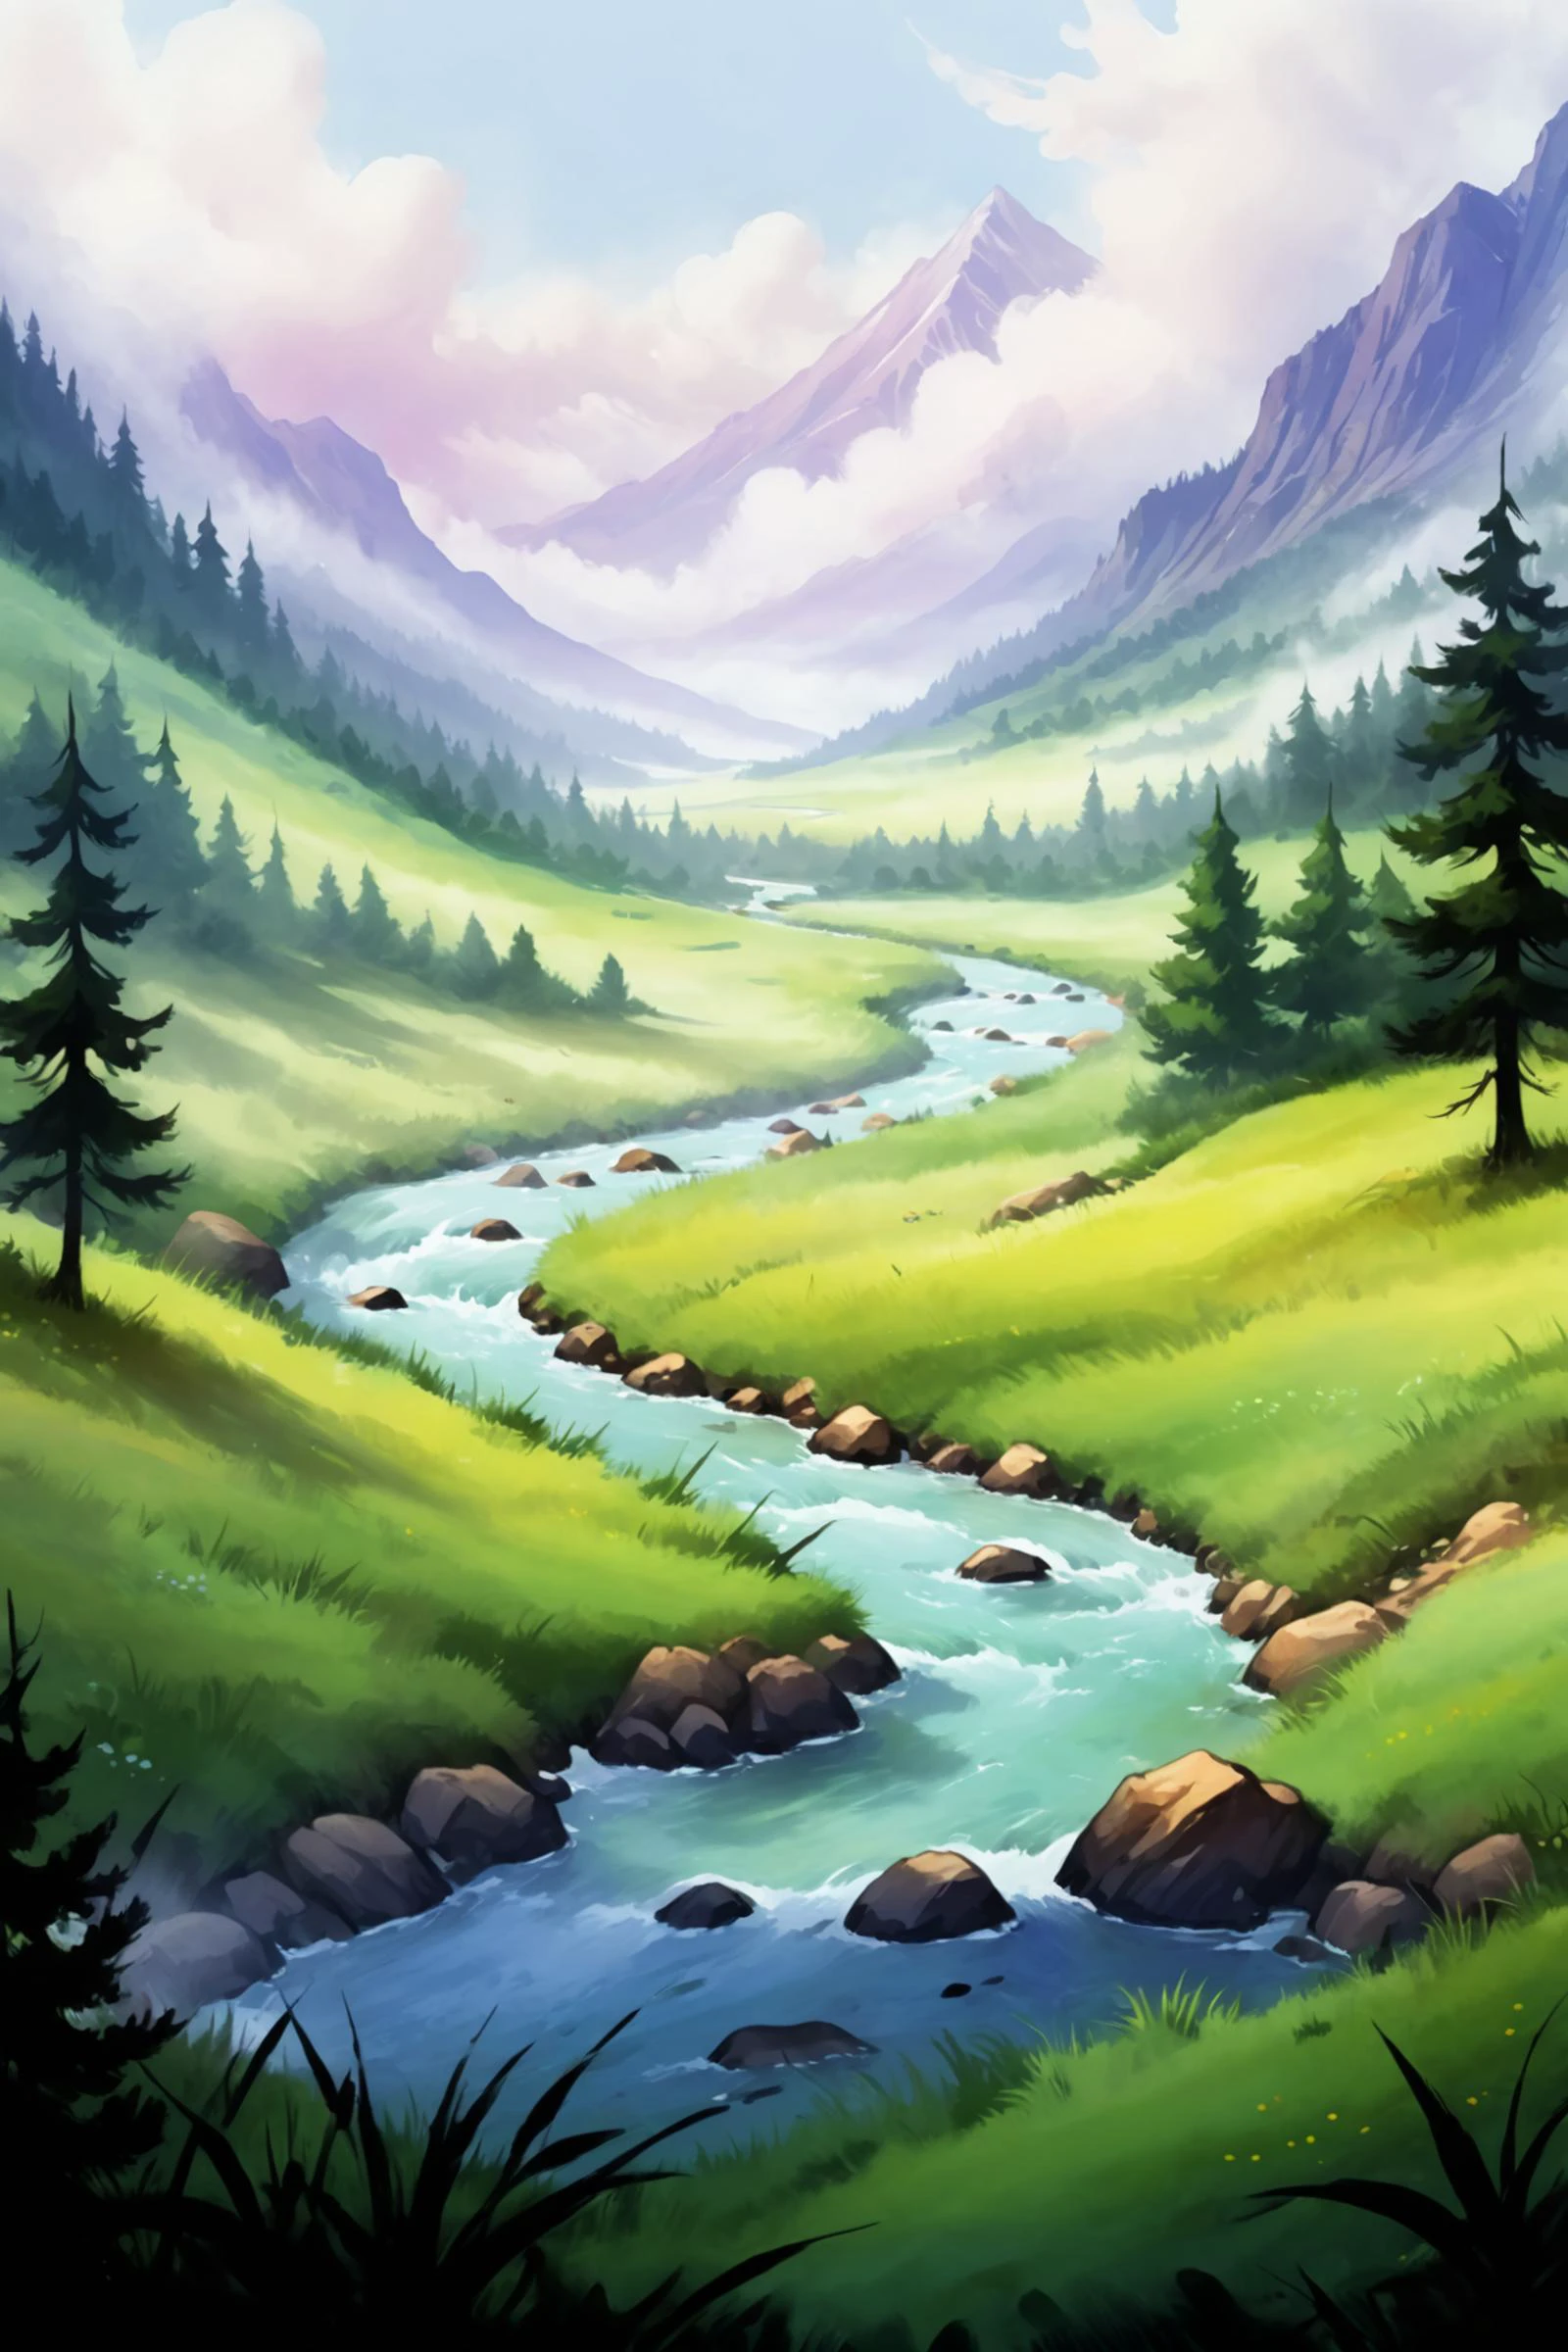 2D 게임 장면, 미니멀리스트 풍경의 유화 및 수채화 그림, 강, 목초지, 안개, 구름, 산, 나무, 숲, (걸작:1.2), 최고의 품질